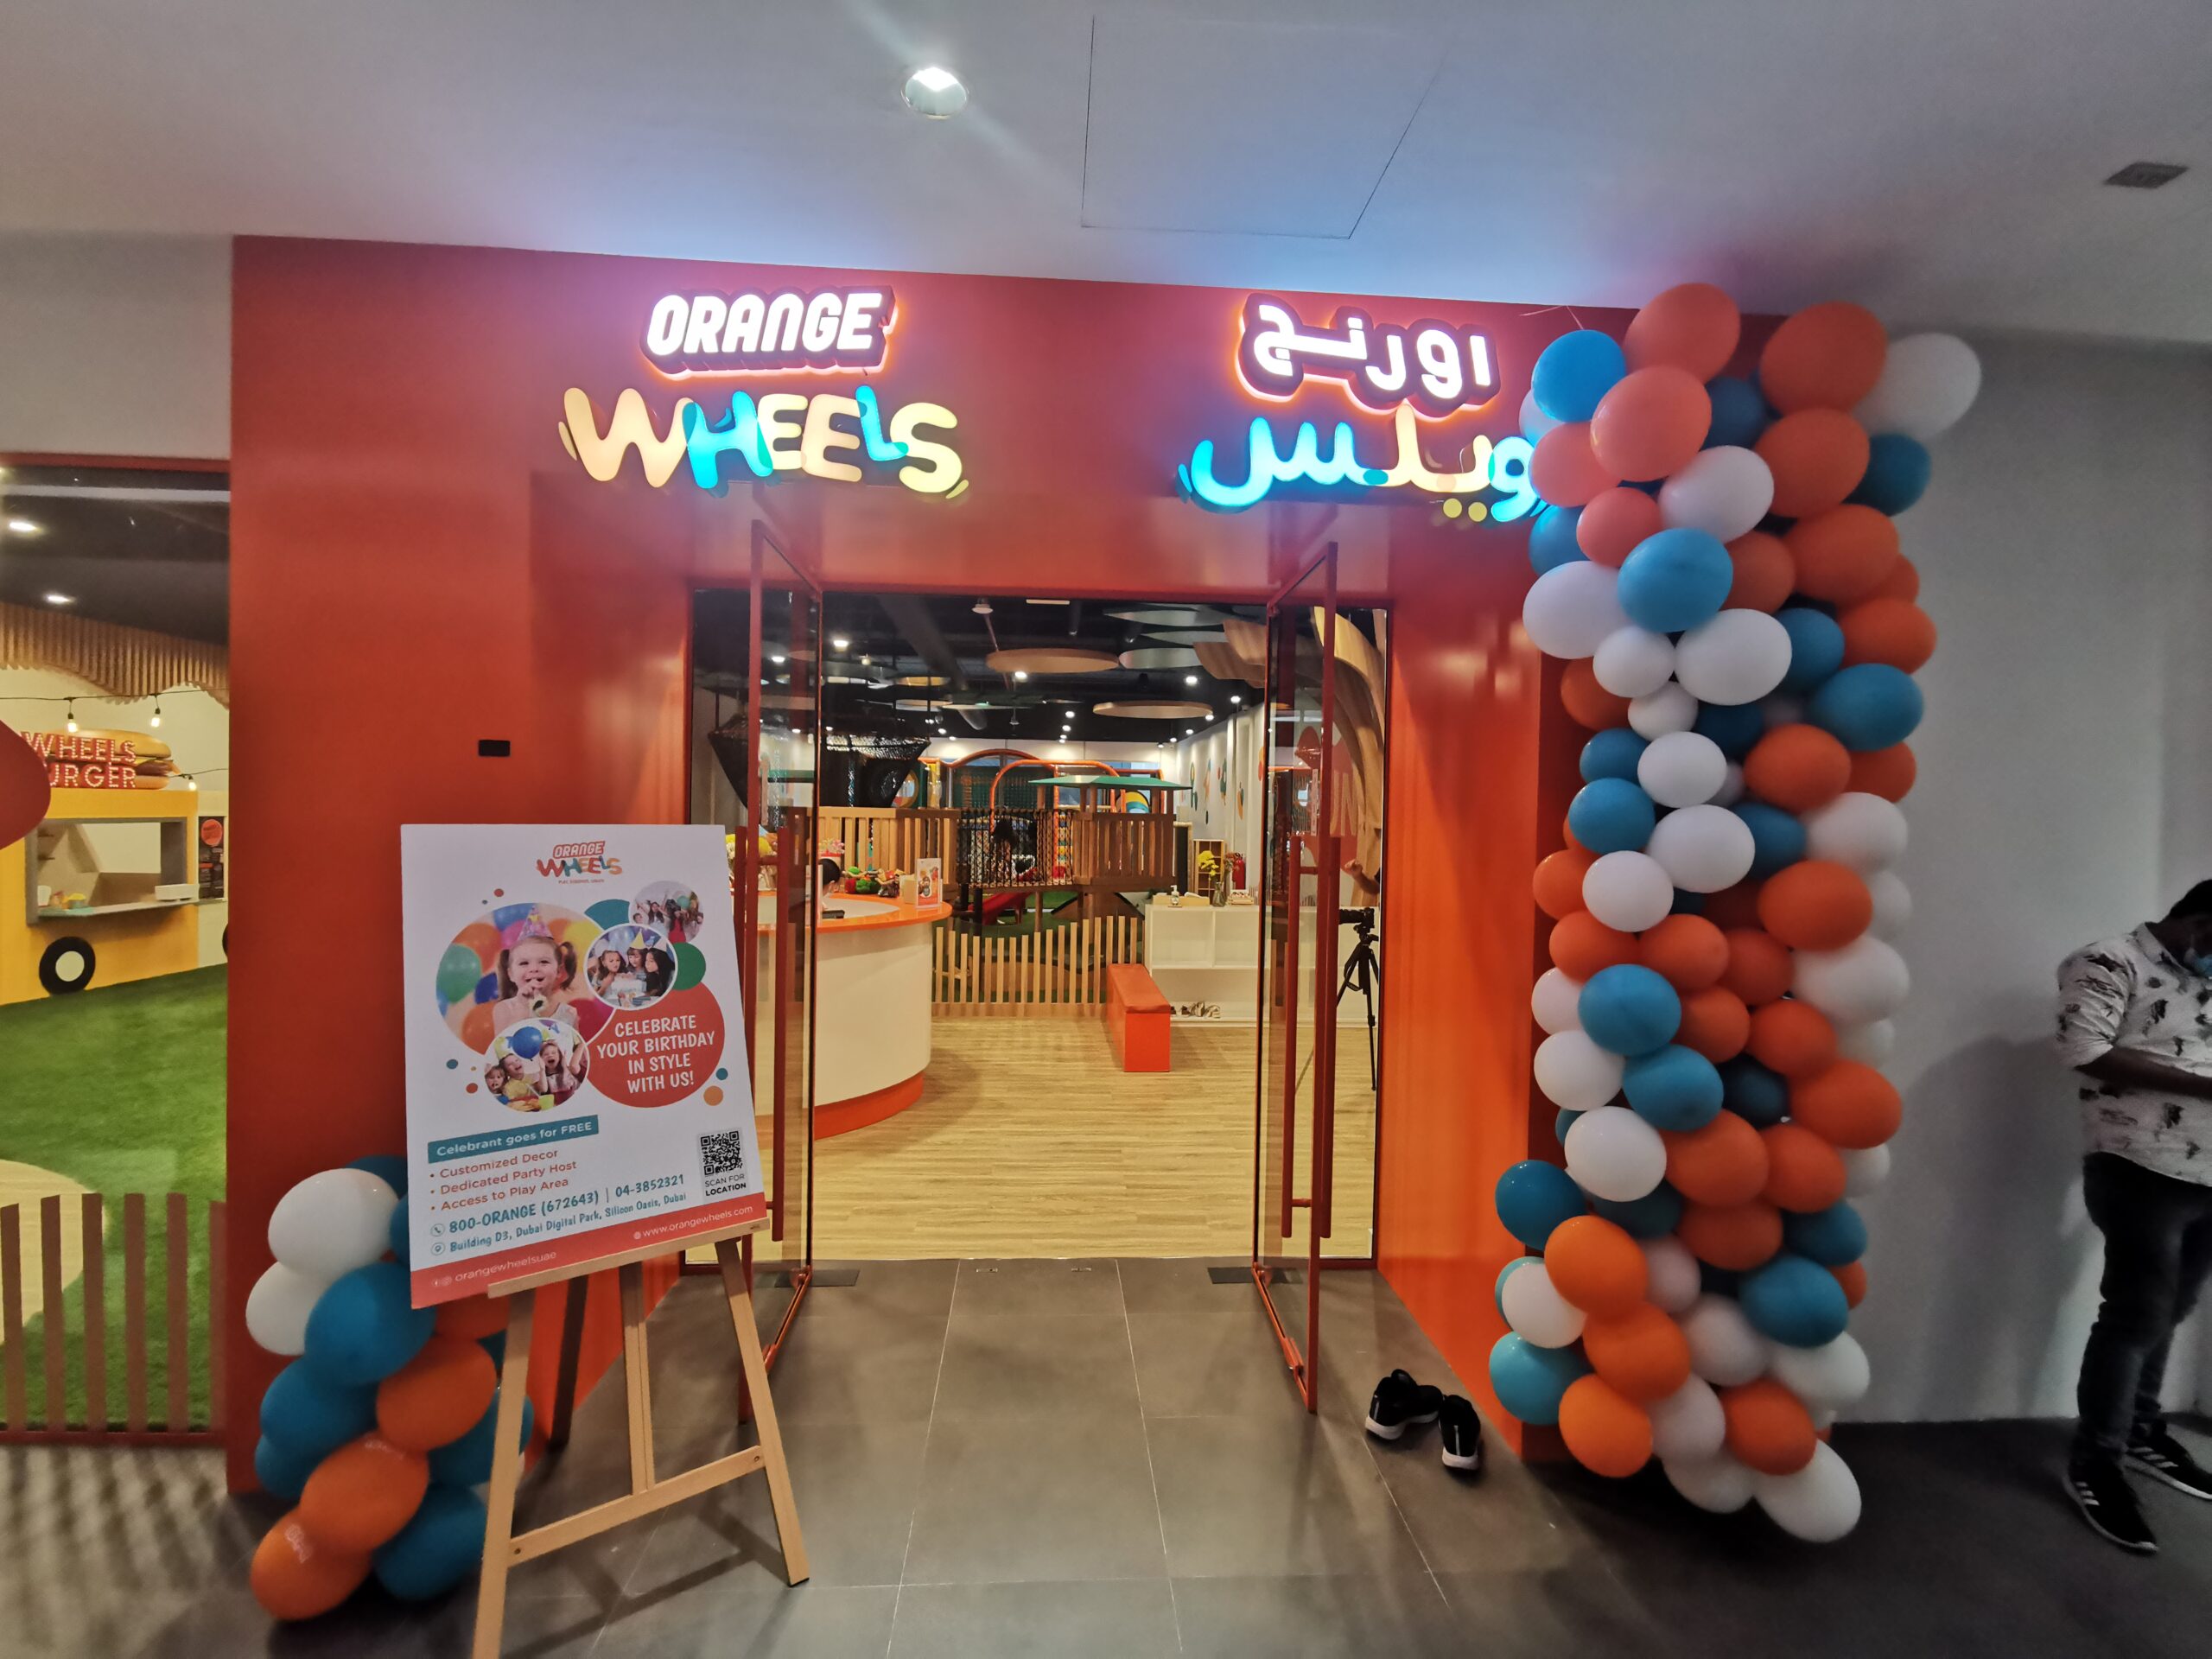 Orange wheels Dubai